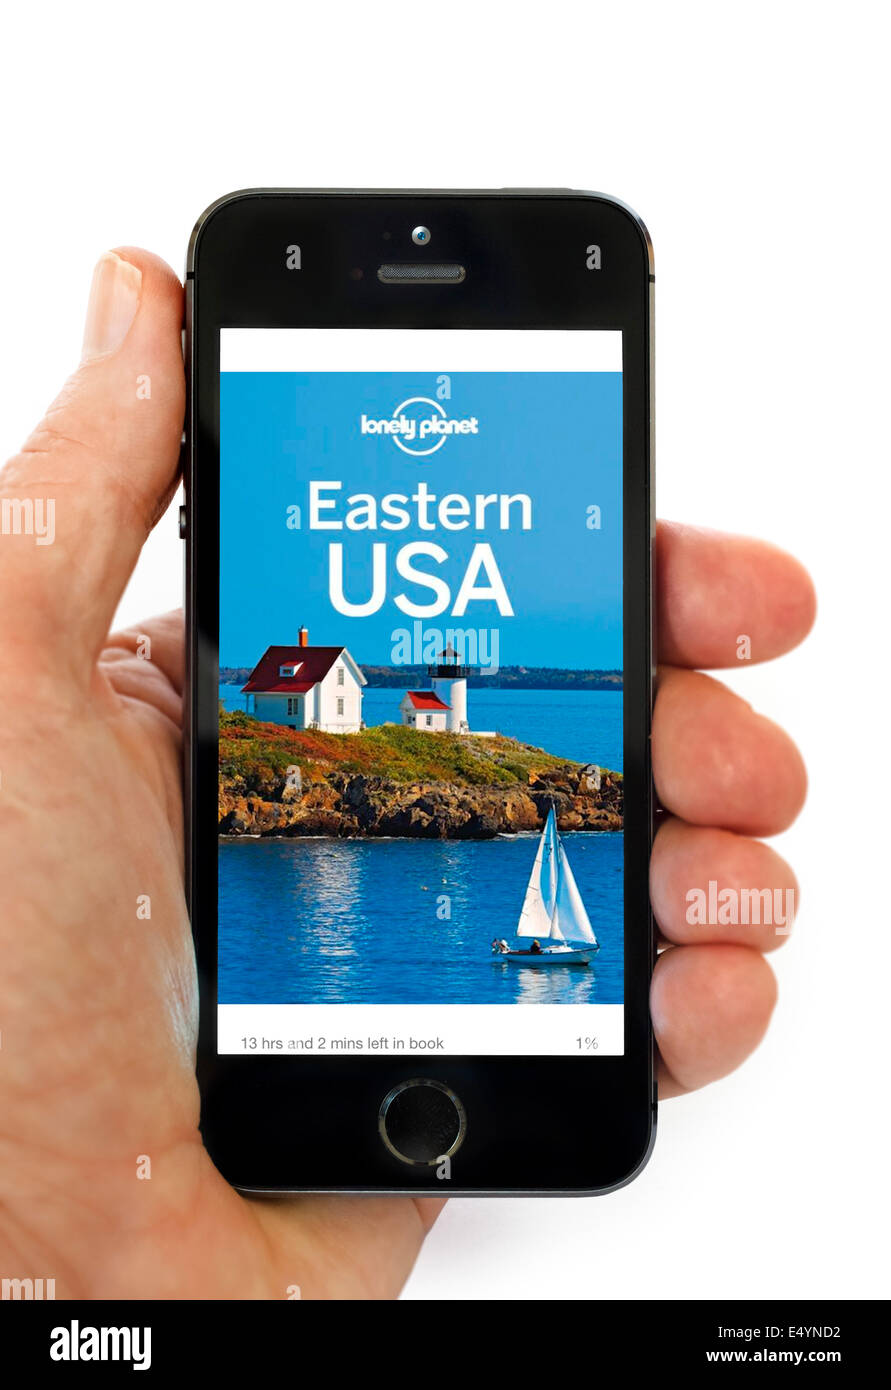 La lecture d'un guide Lonely Planet trave sur l'application Kindle sur un Apple iPhone 5S Banque D'Images